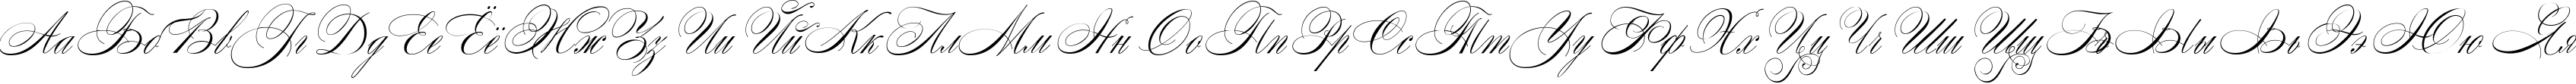 Пример написания русского алфавита шрифтом Wolfgang Amadeus Mozart